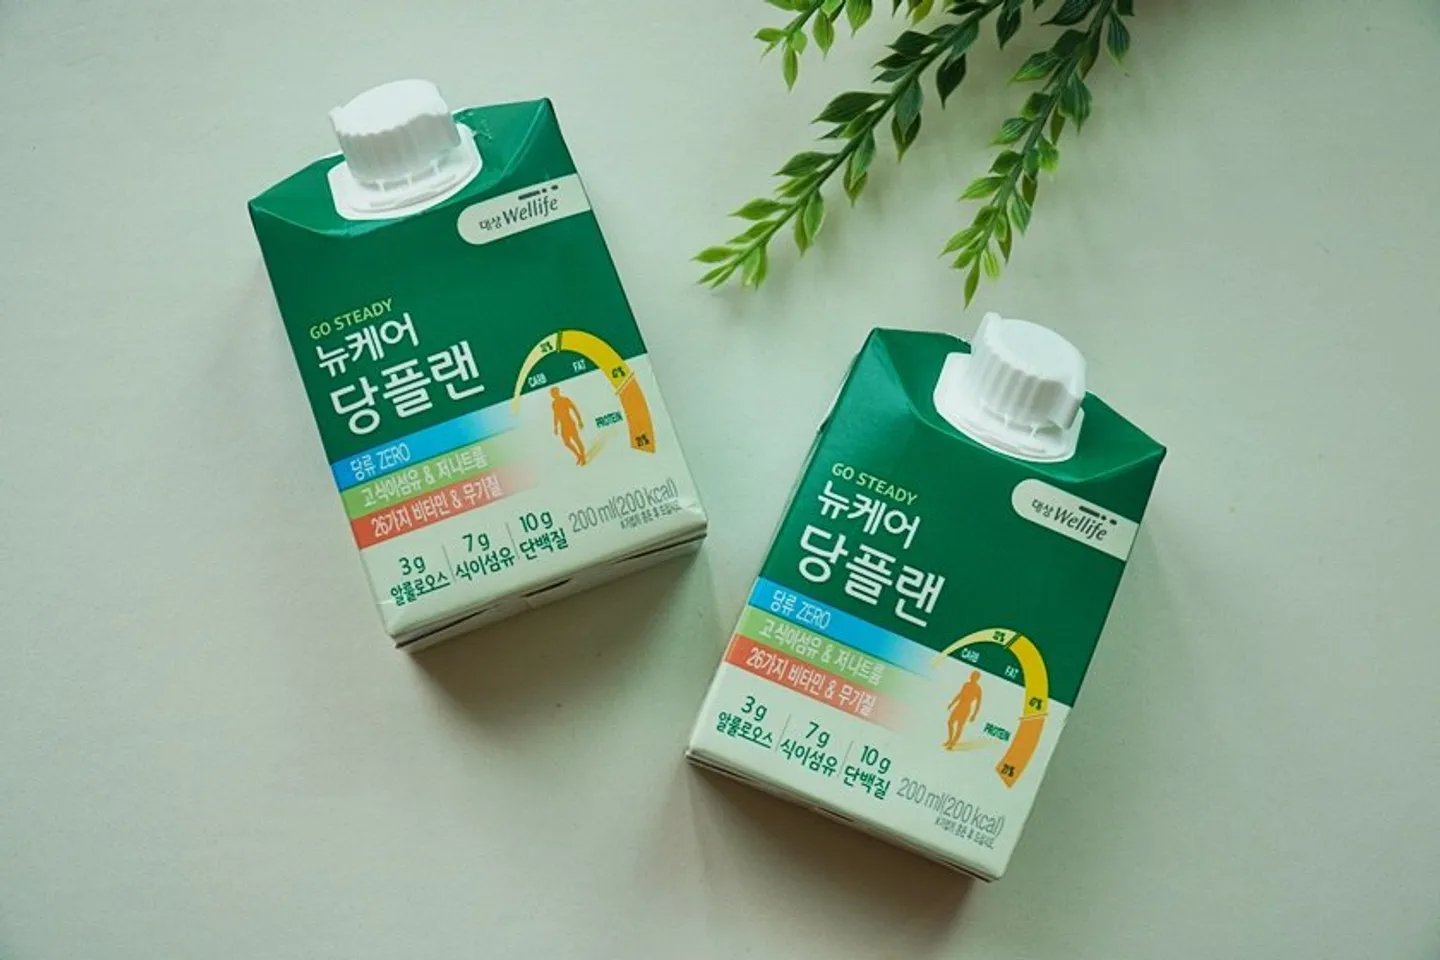 Sữa hạt công thức Nucare cho người tiểu đường Wellife 30 hộp 1